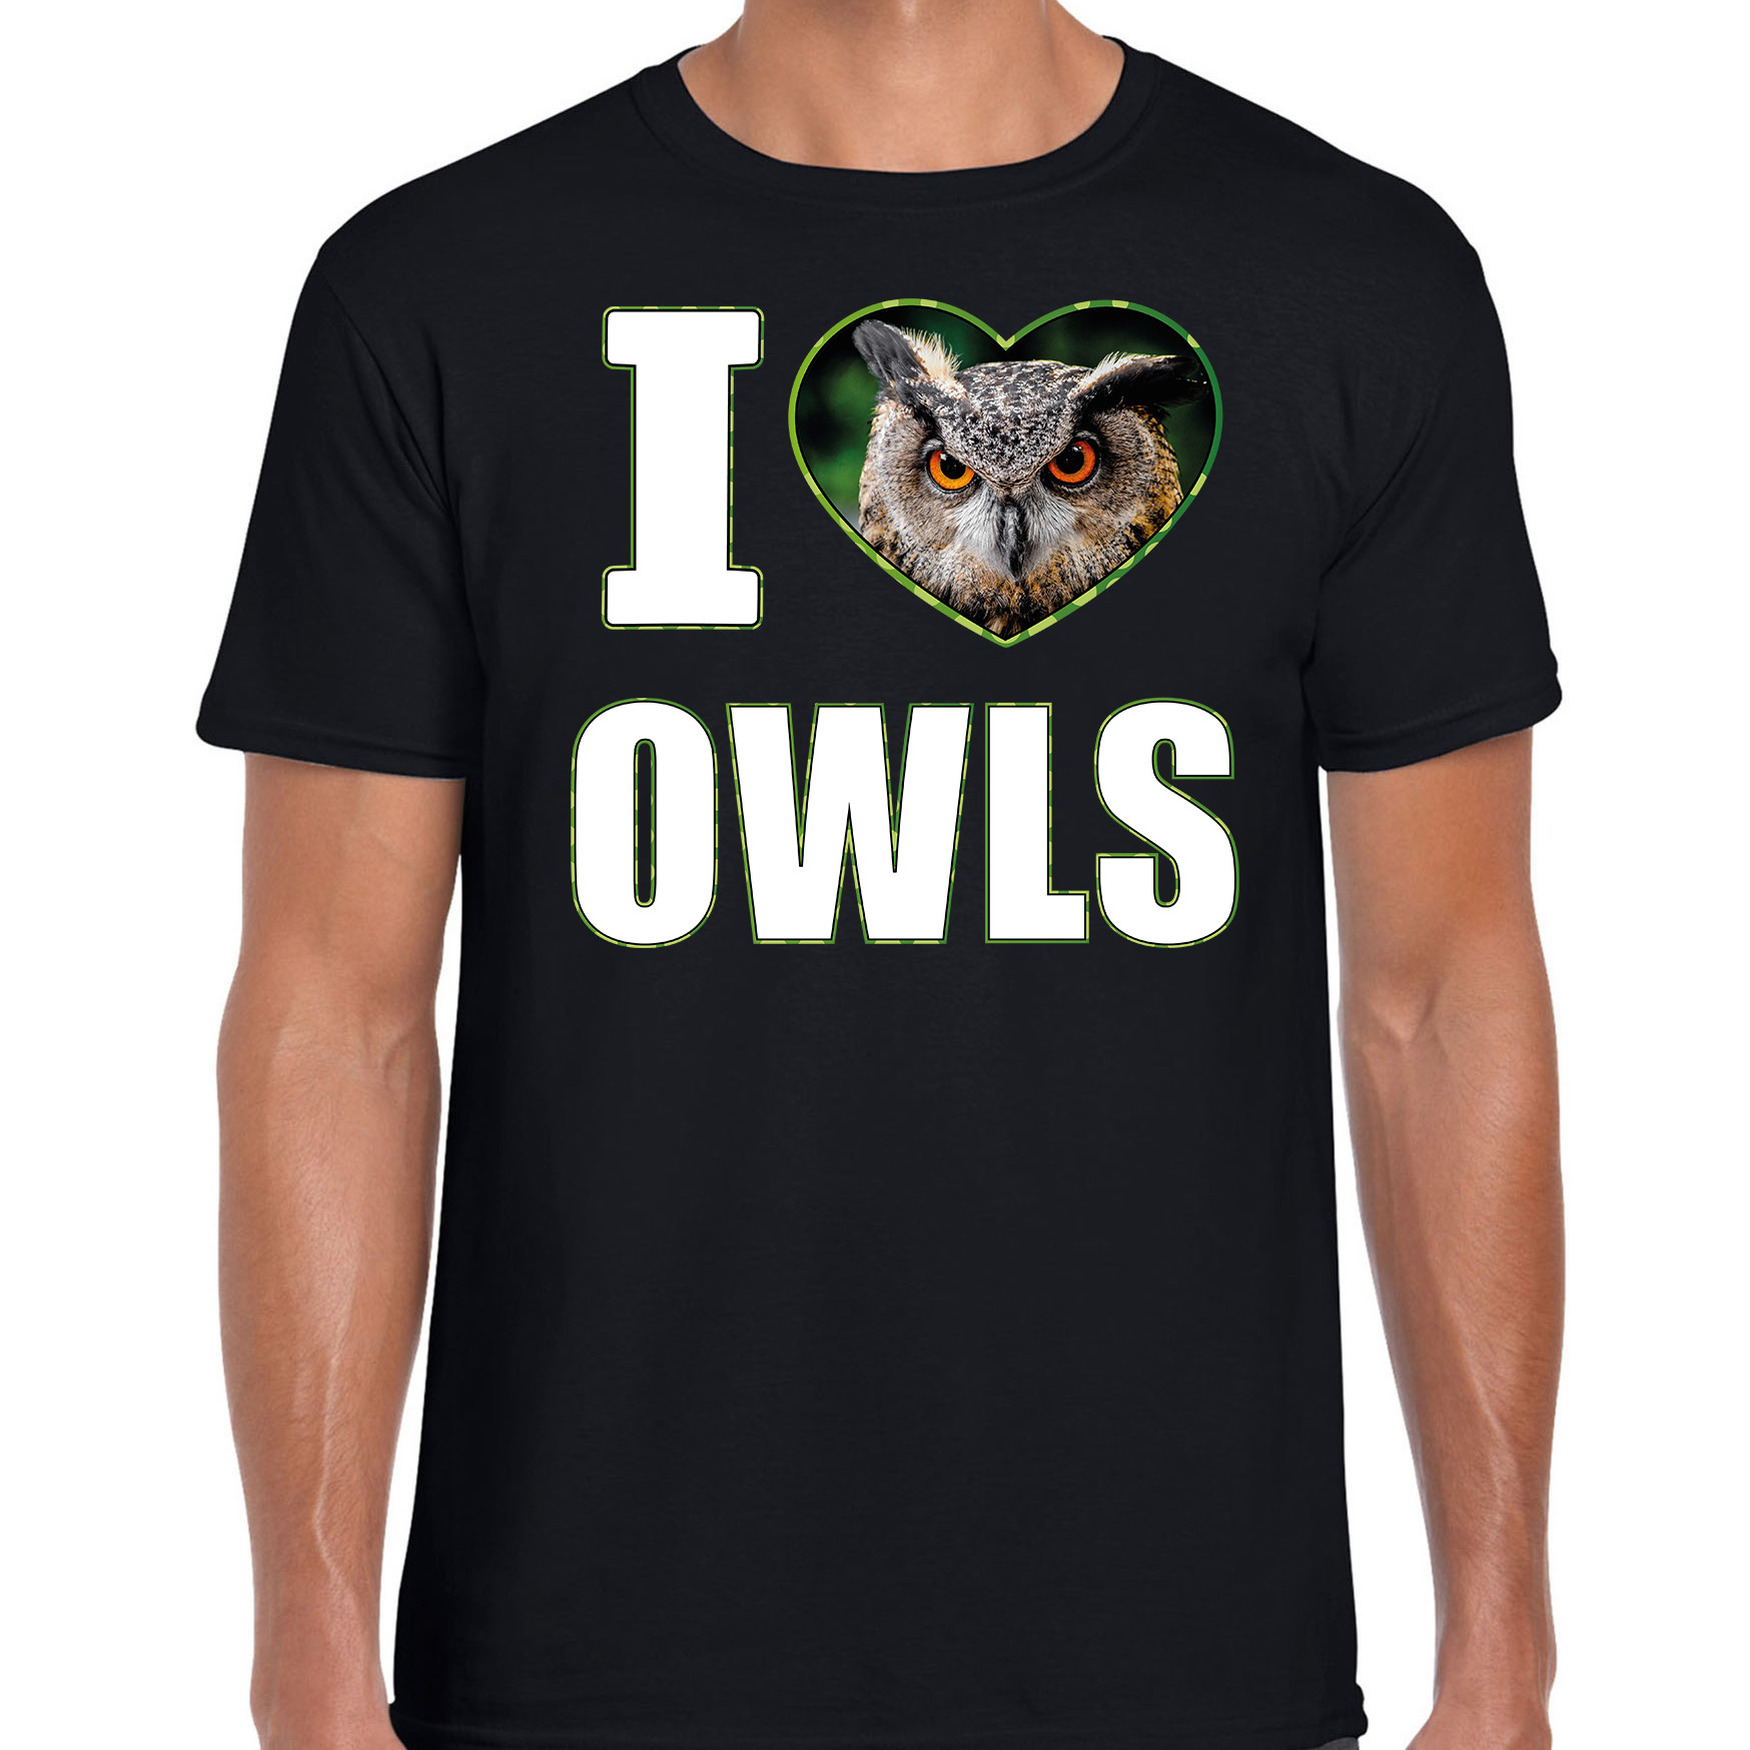 I love owls t-shirt met dieren foto van een uil zwart voor heren